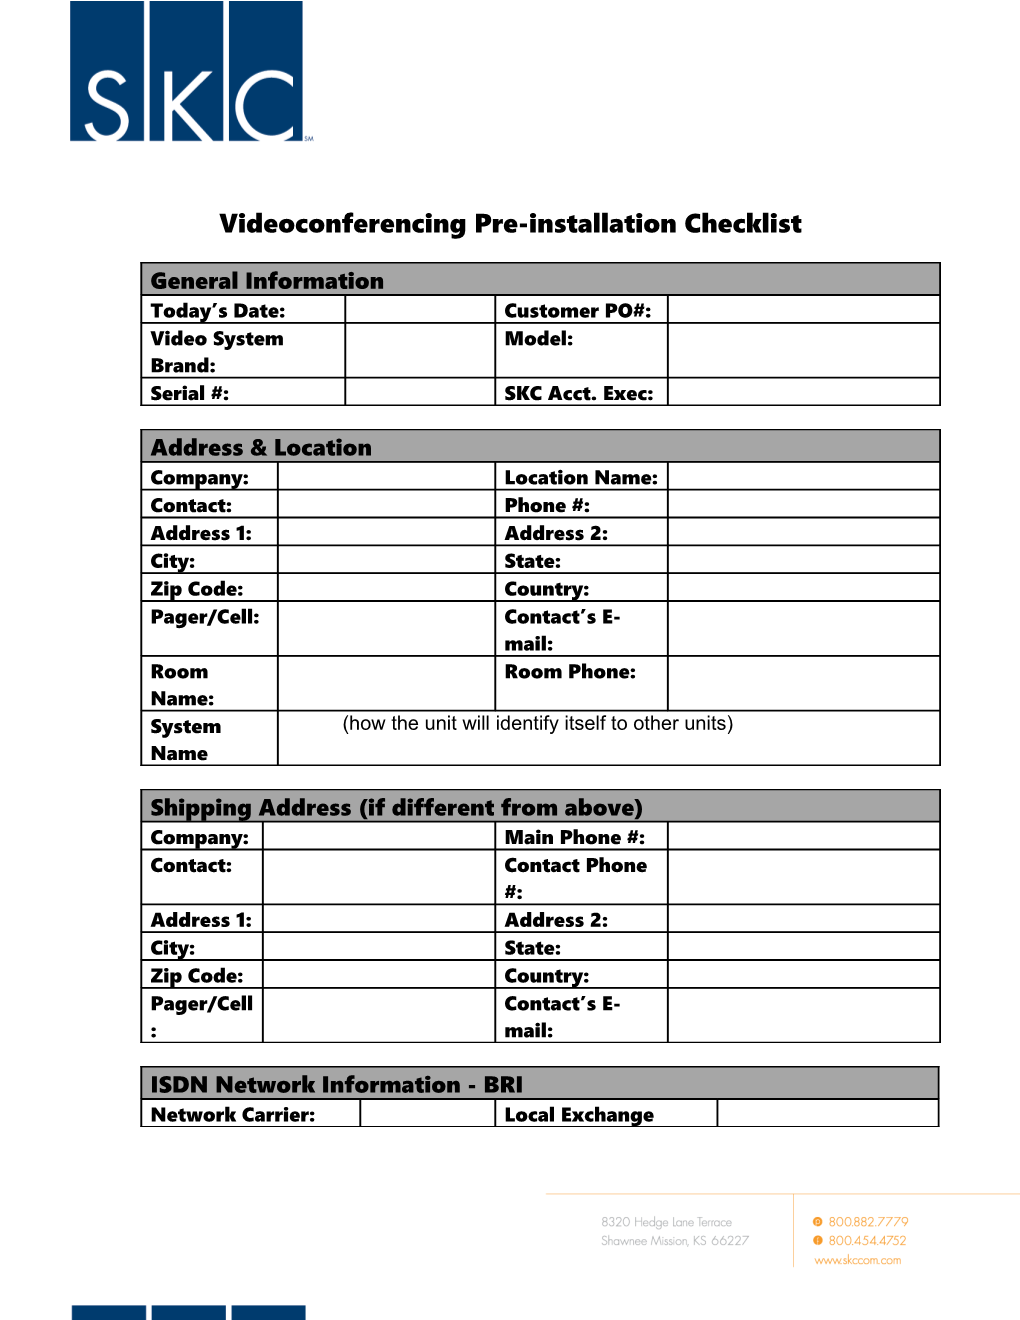 TANDBERG MPS Pre-Installation Checklist